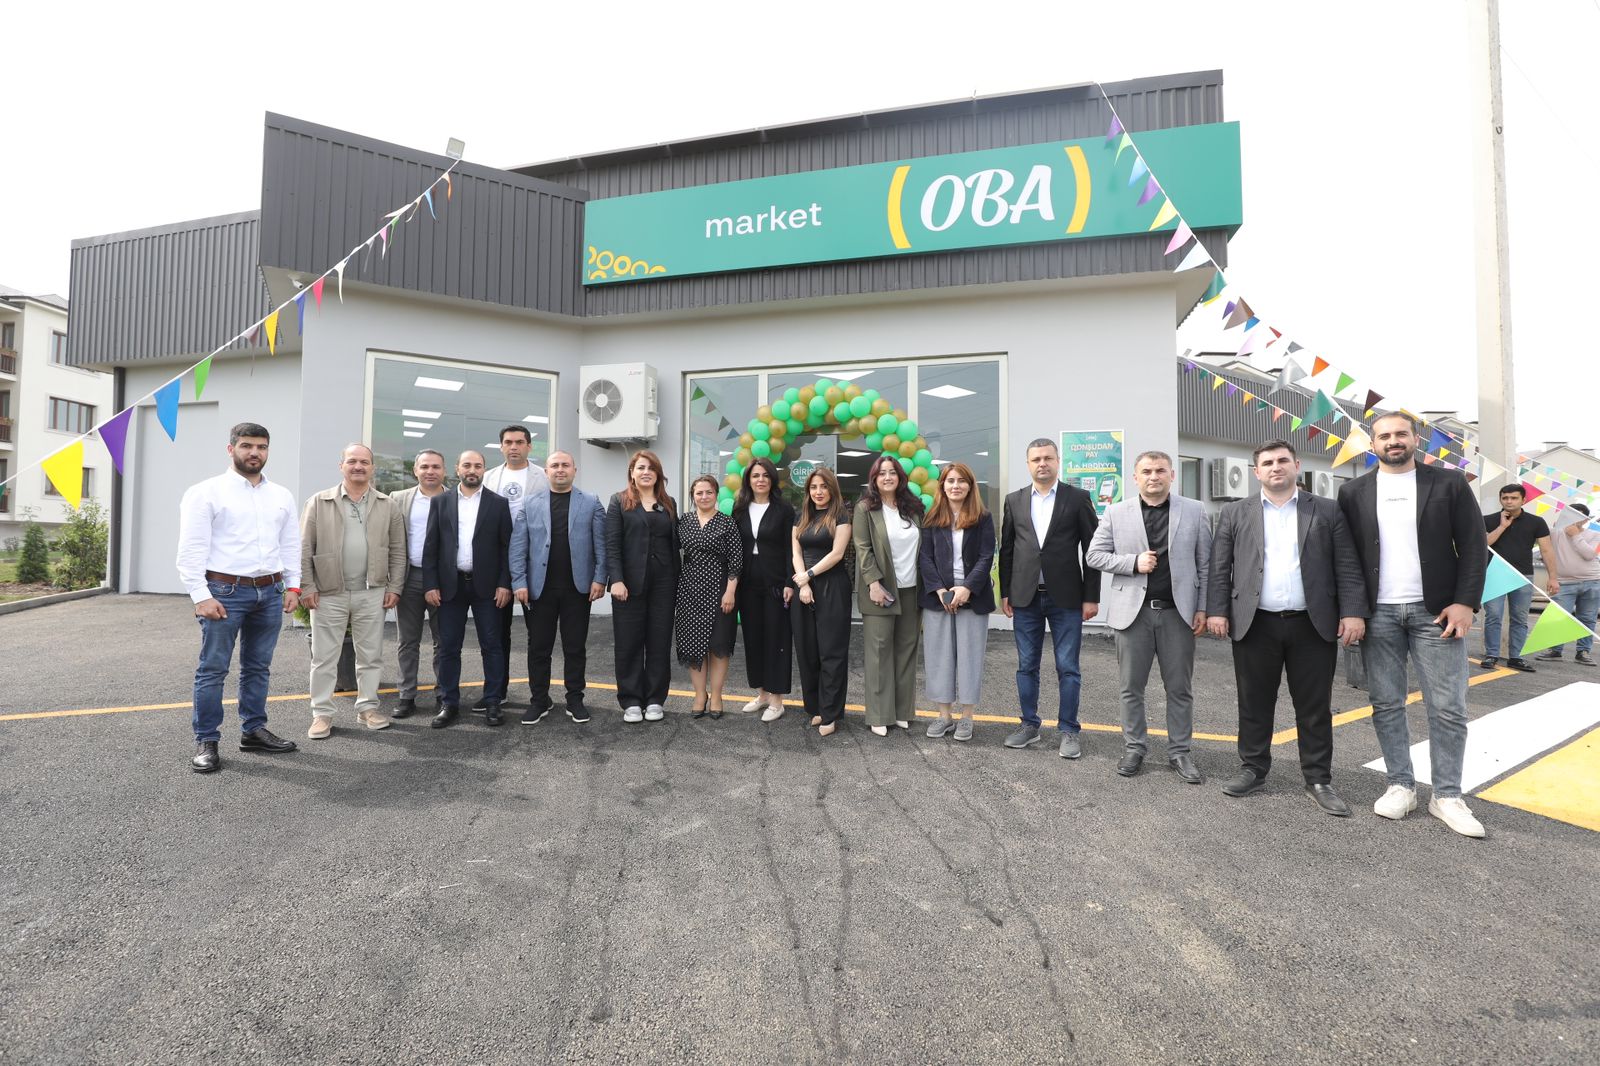 Xocalının ilk marketi “OBA” oldu (FOTO)